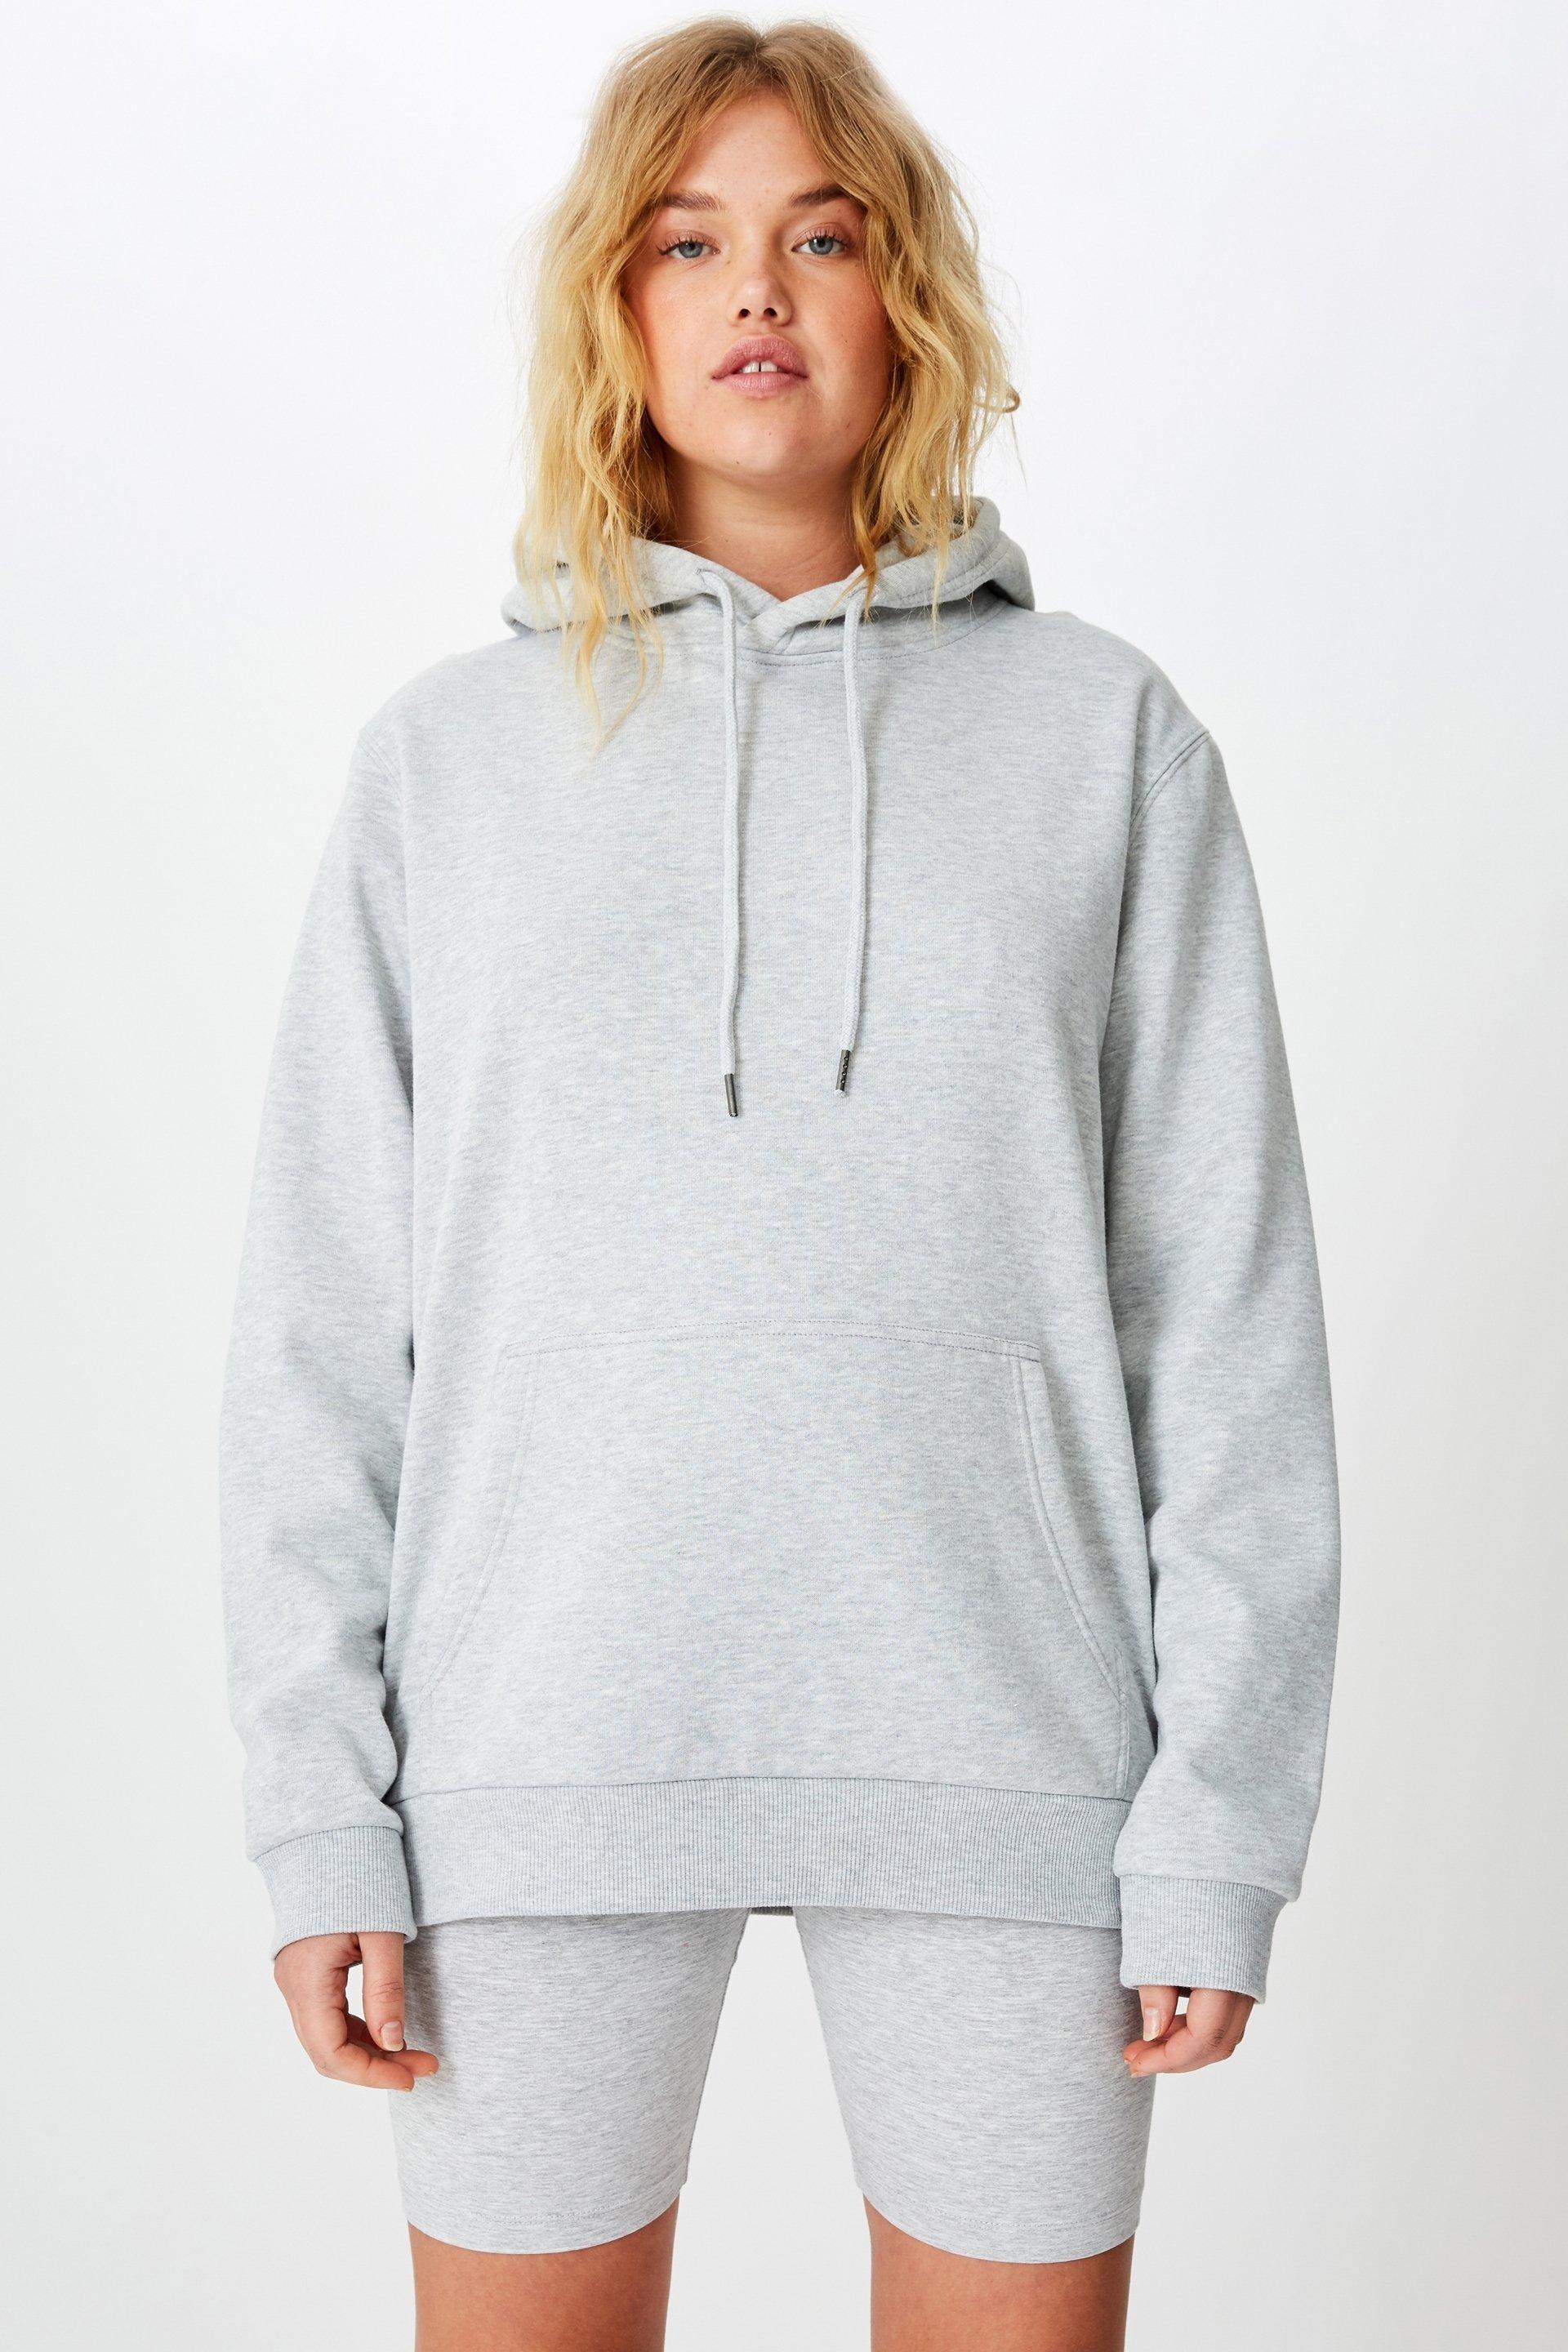 Basic hoodie - grey Factorie Hoodies & Sweats | Superbalist.com